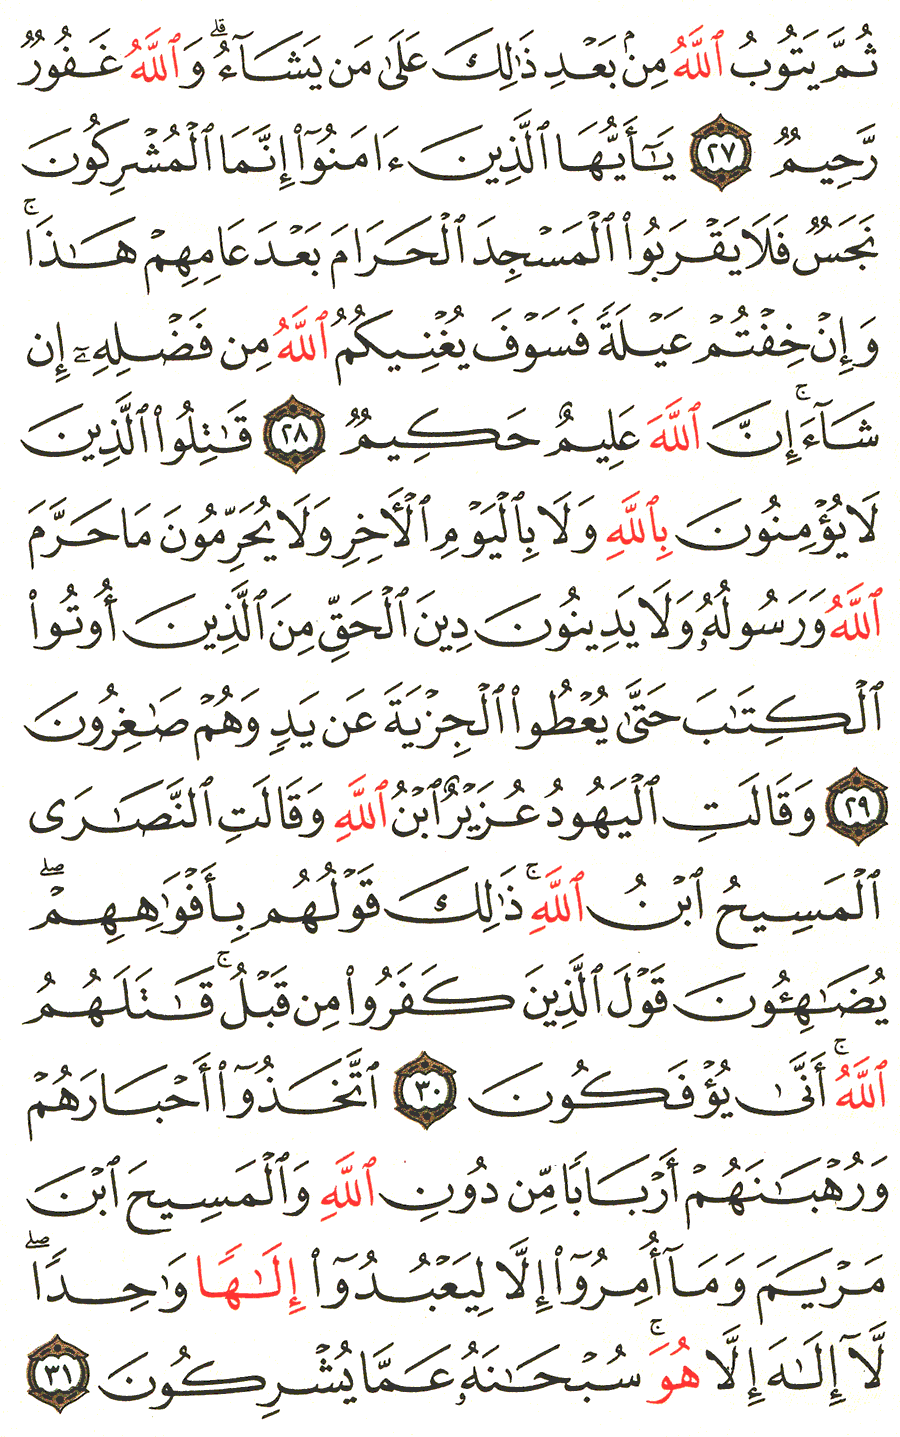 الصفحة 191 من القرآن الكريم